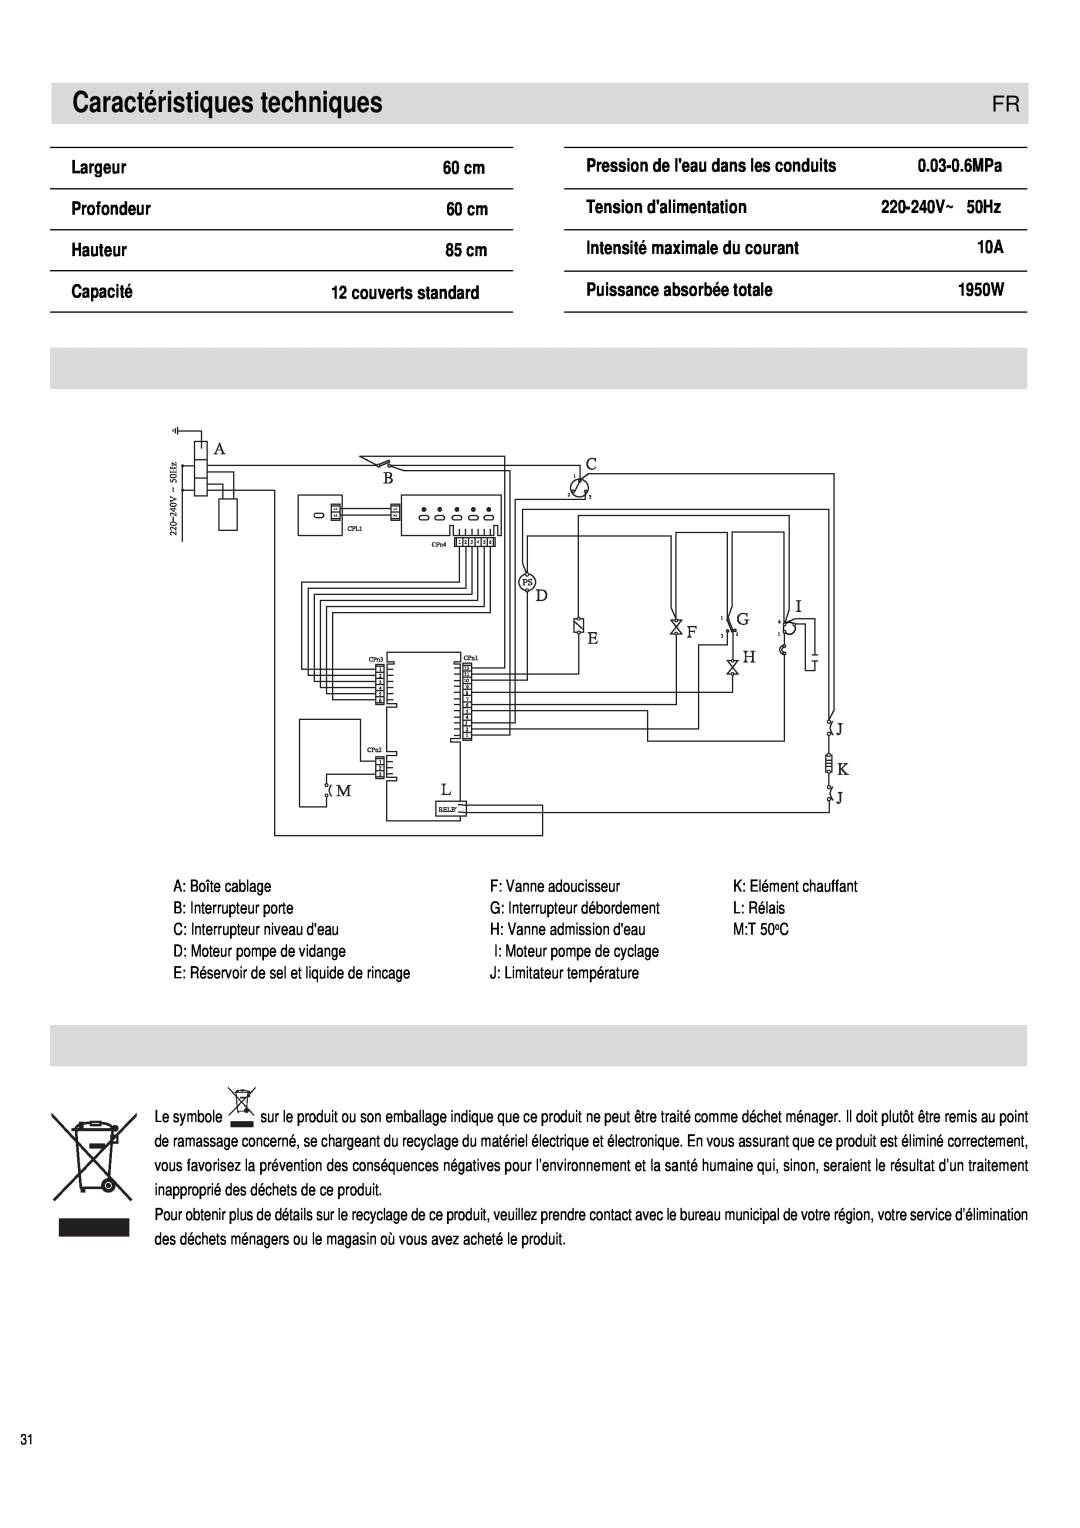 Haier DW12-PFE1 ME, DW12-PFE1 S manual Caractéristiques techniques, Pression de leau dans les conduits 